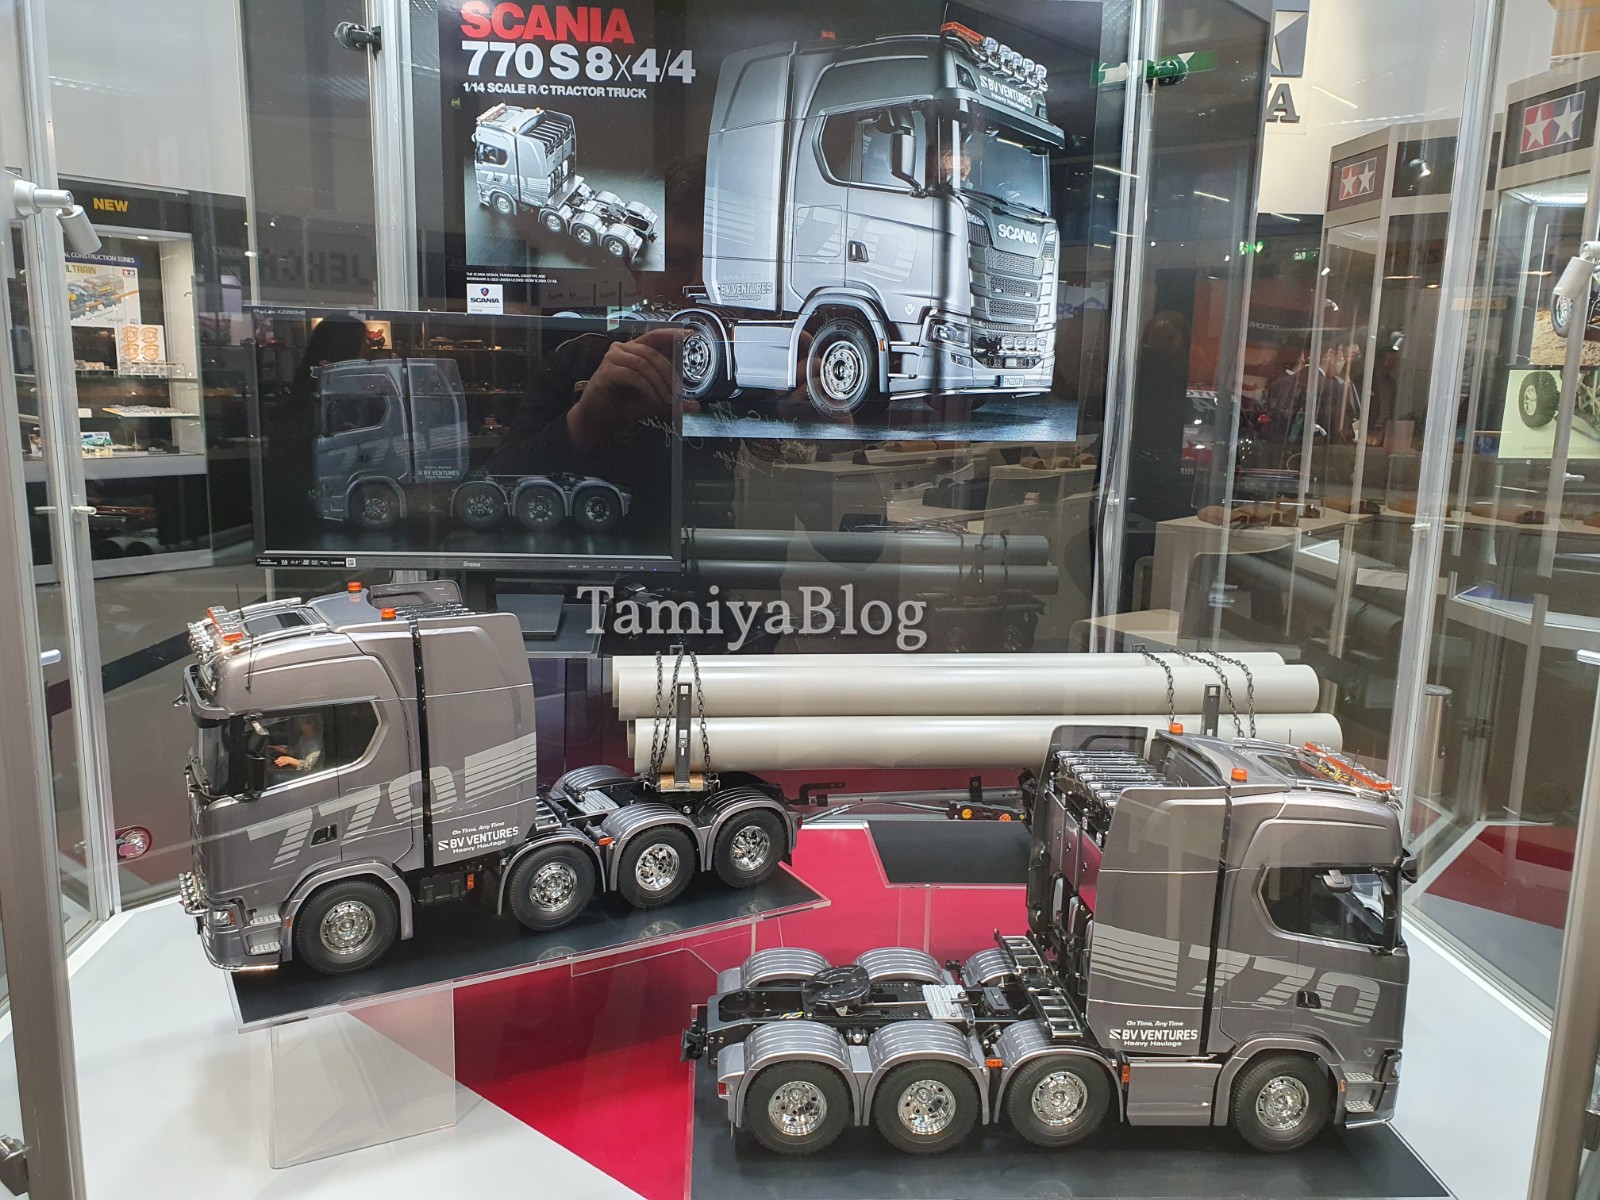 Tamiya 56371 1/14 RC Scania 770S 8×4/4 at Nuremberg Toy Fair 2023 -  TamiyaBlog